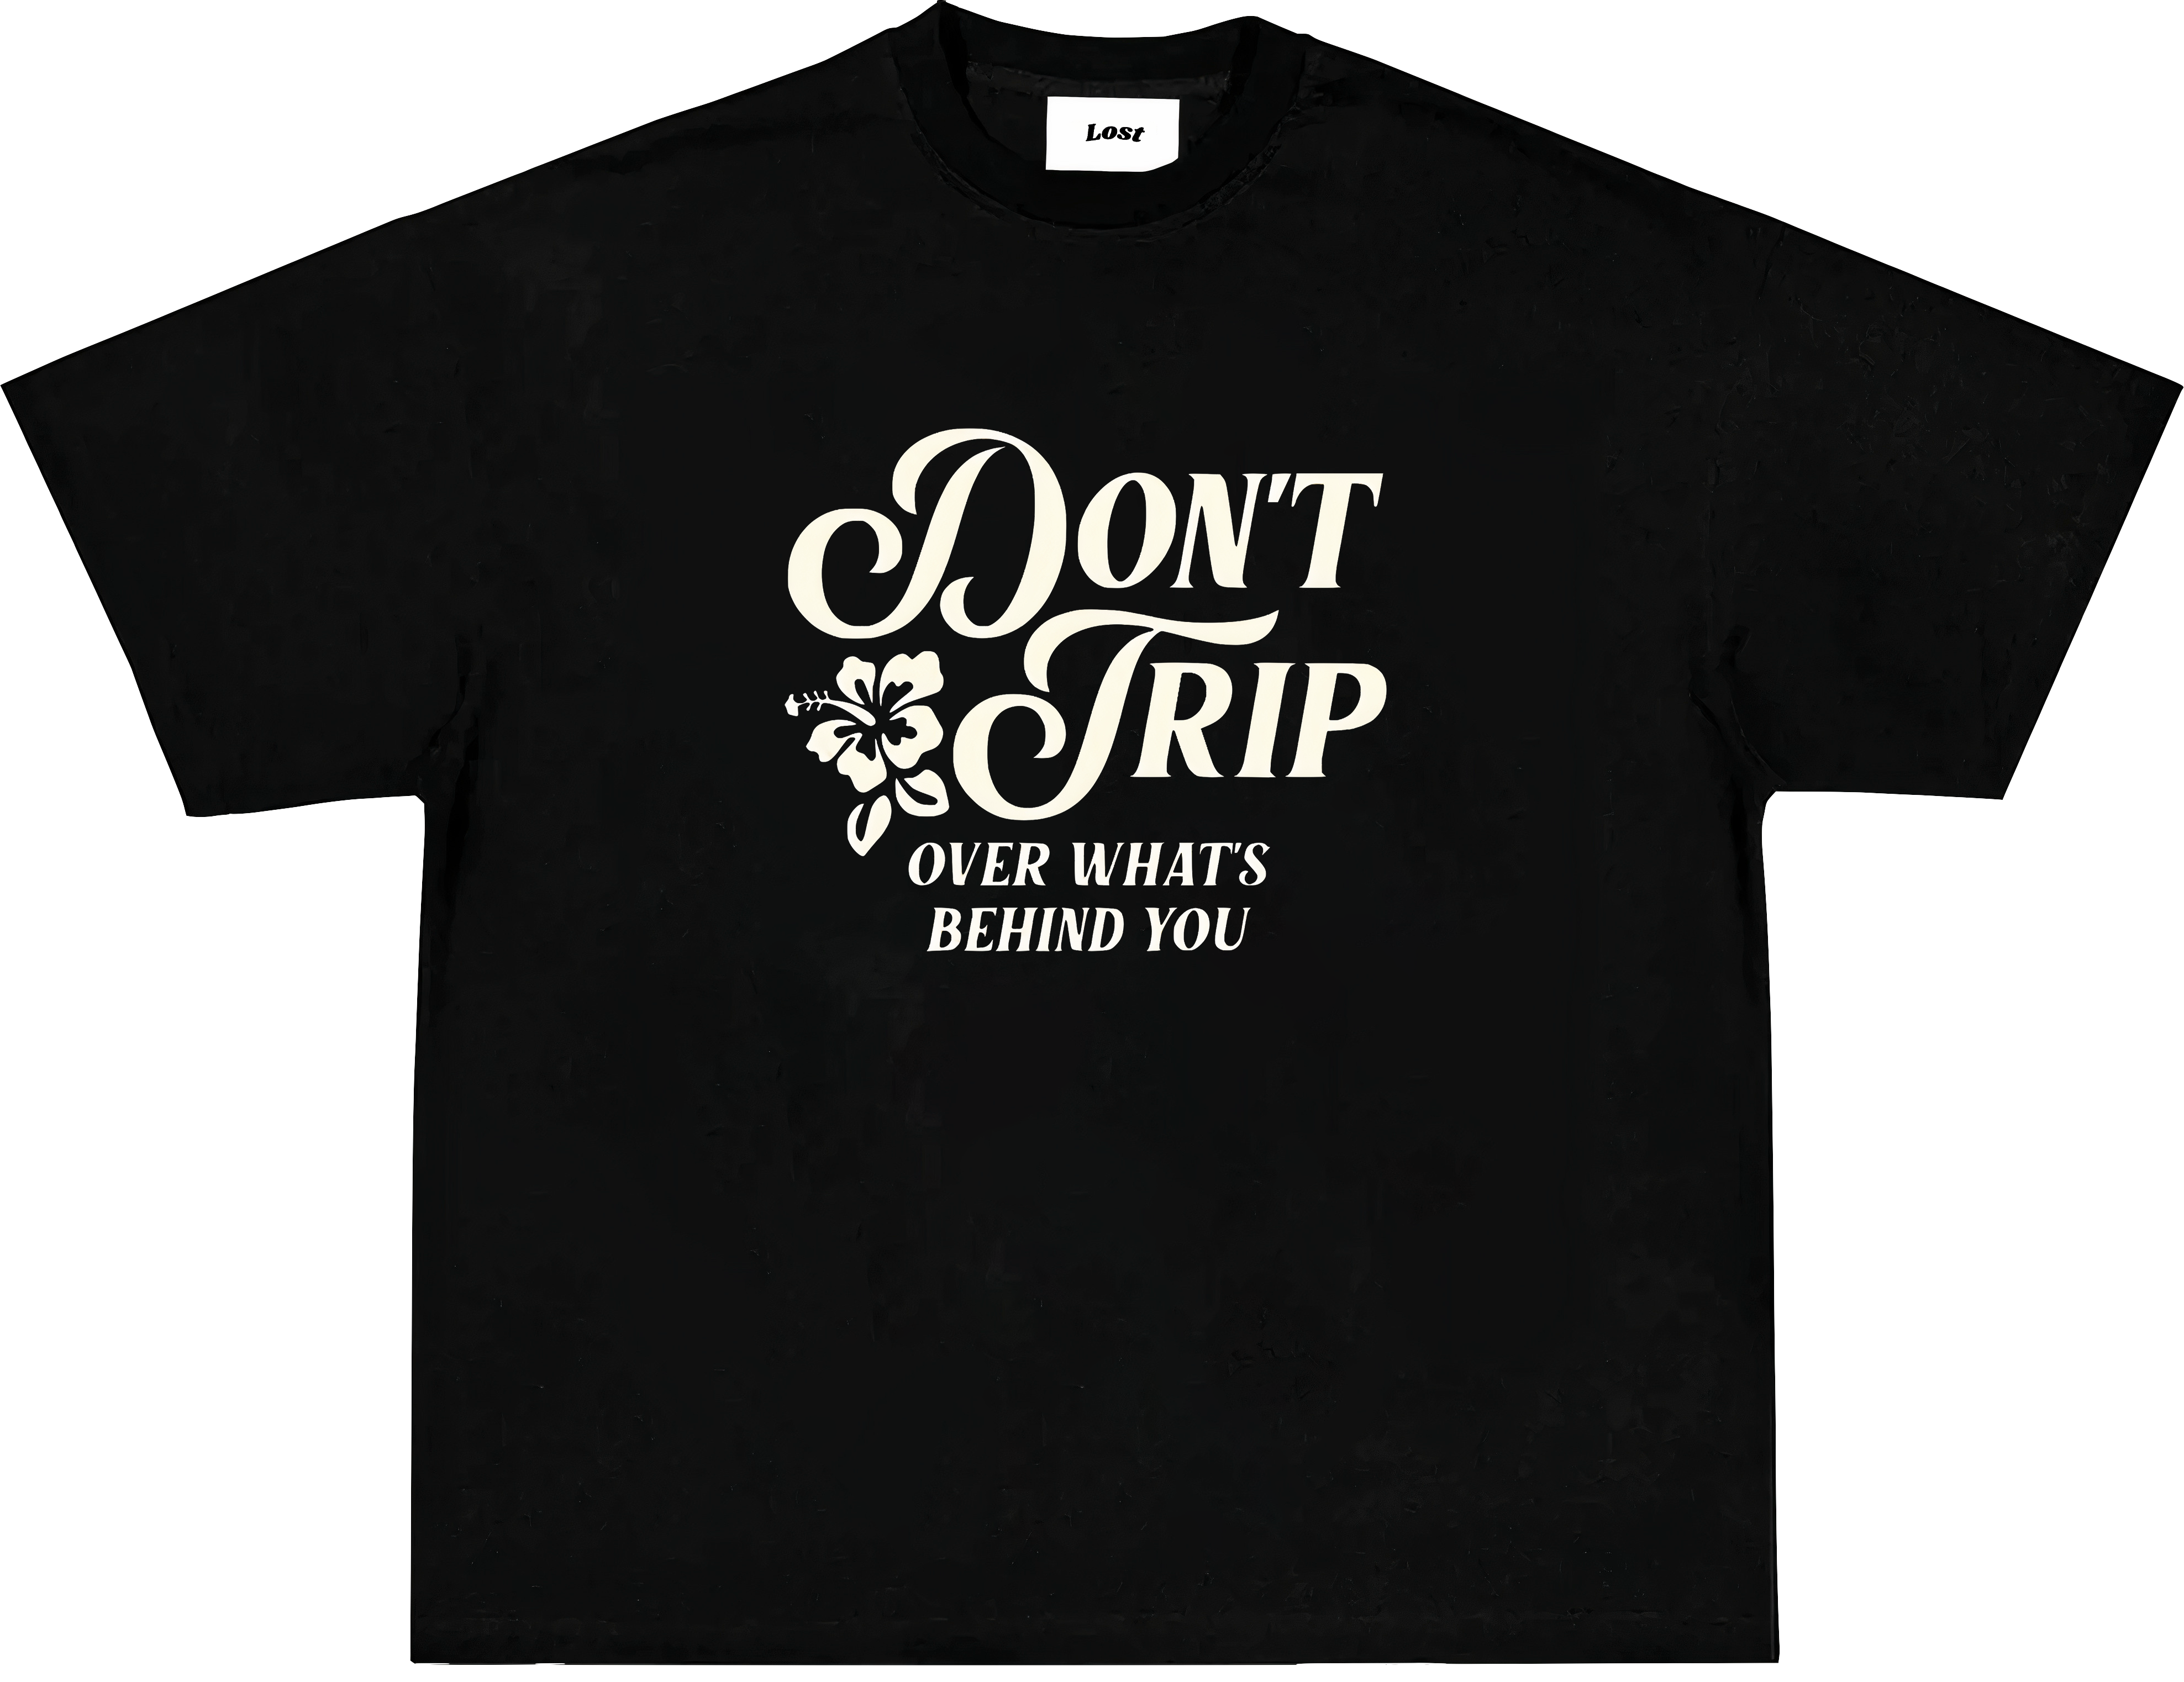 MAC MILLER "dont trip" Oversized T-shirt